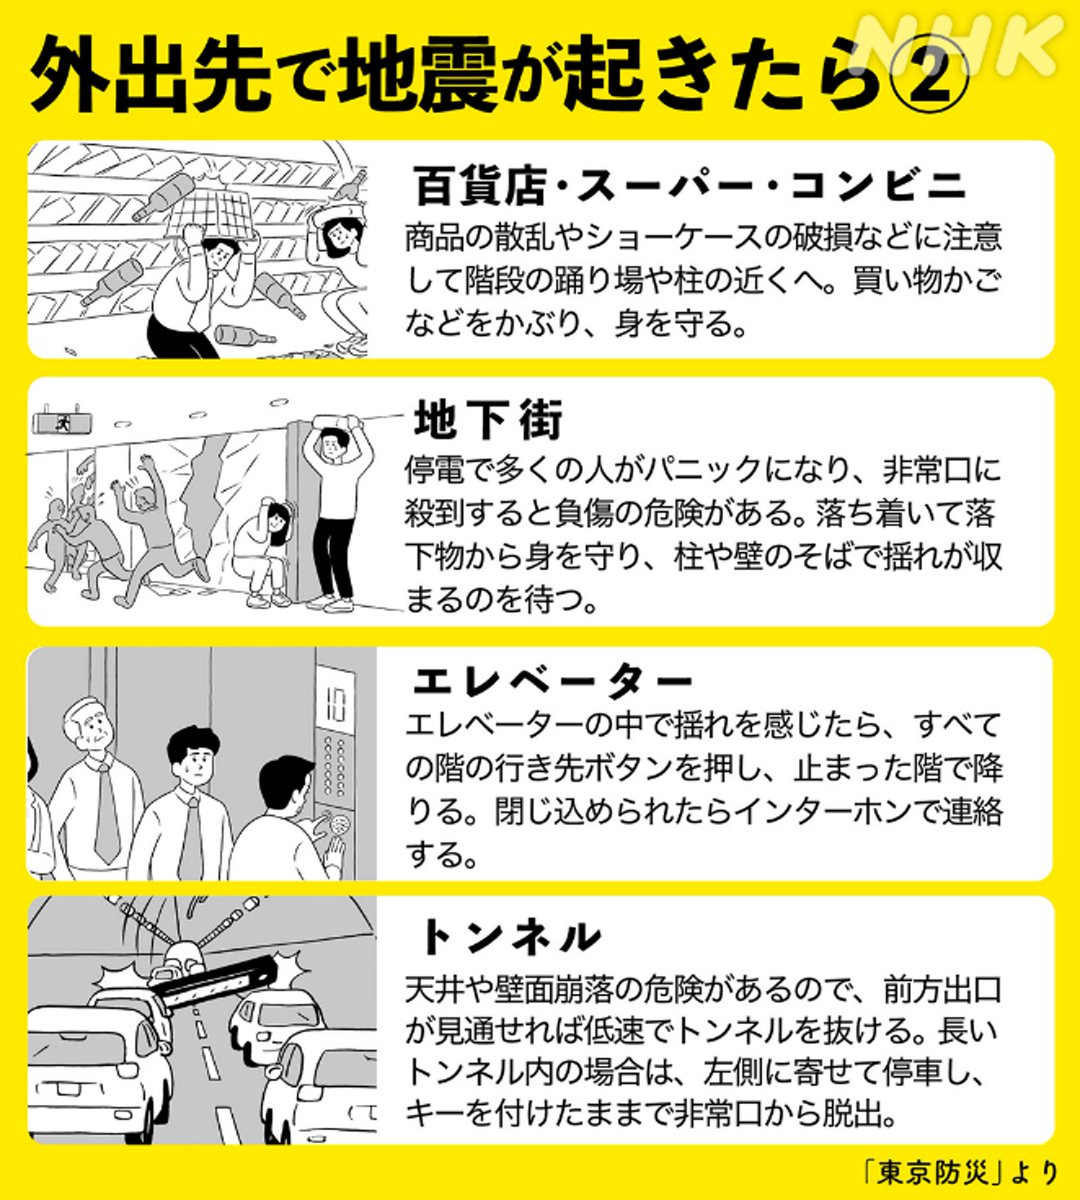 外出中に大きな地震に遭遇することもあります 電車の中や駅、繁華街、エレベーターの中などで、とっさにどう行動すればいいか、確認しておいてくださいね 駅ではホームから転落しないよう、 できれば近くの柱に移動し、身の安全を守ってください www3.nhk.or.jp/news/special/s…